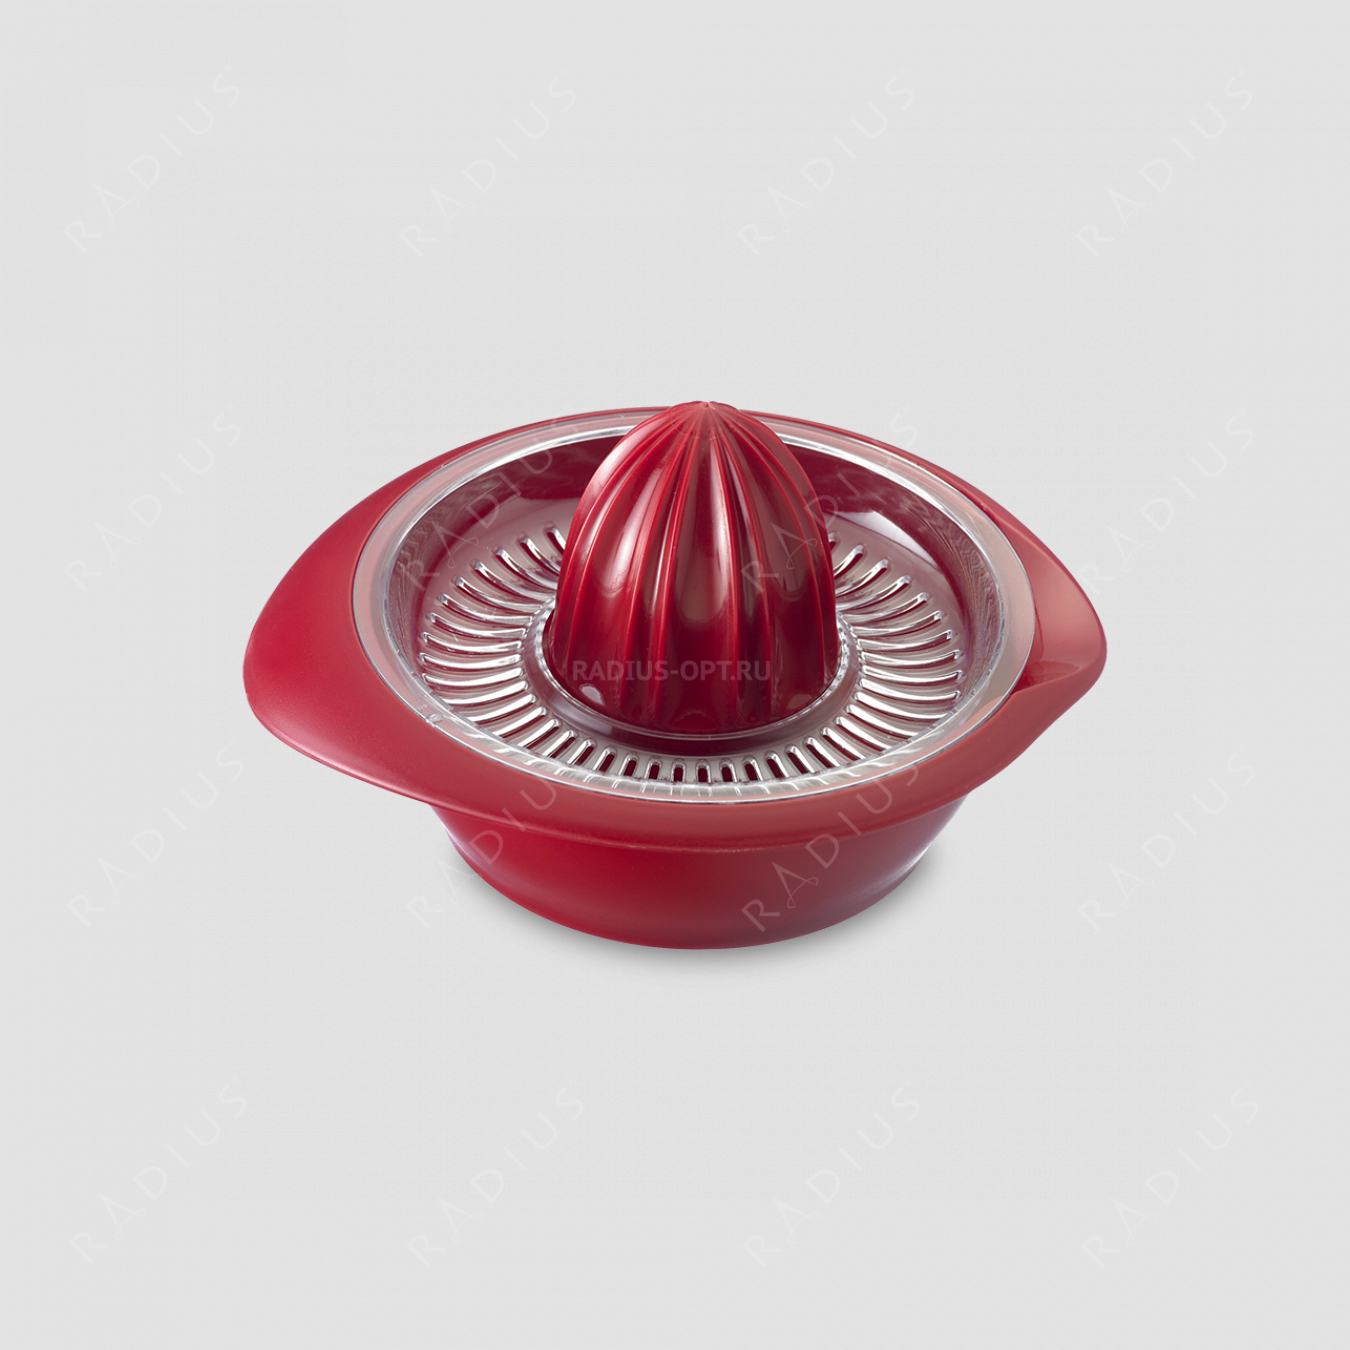 Ручная соковыжималка пластиковая для цитрусовых с сеткой, 200 мл. цвет красный, серия Plastic tools, Westmark, Германия